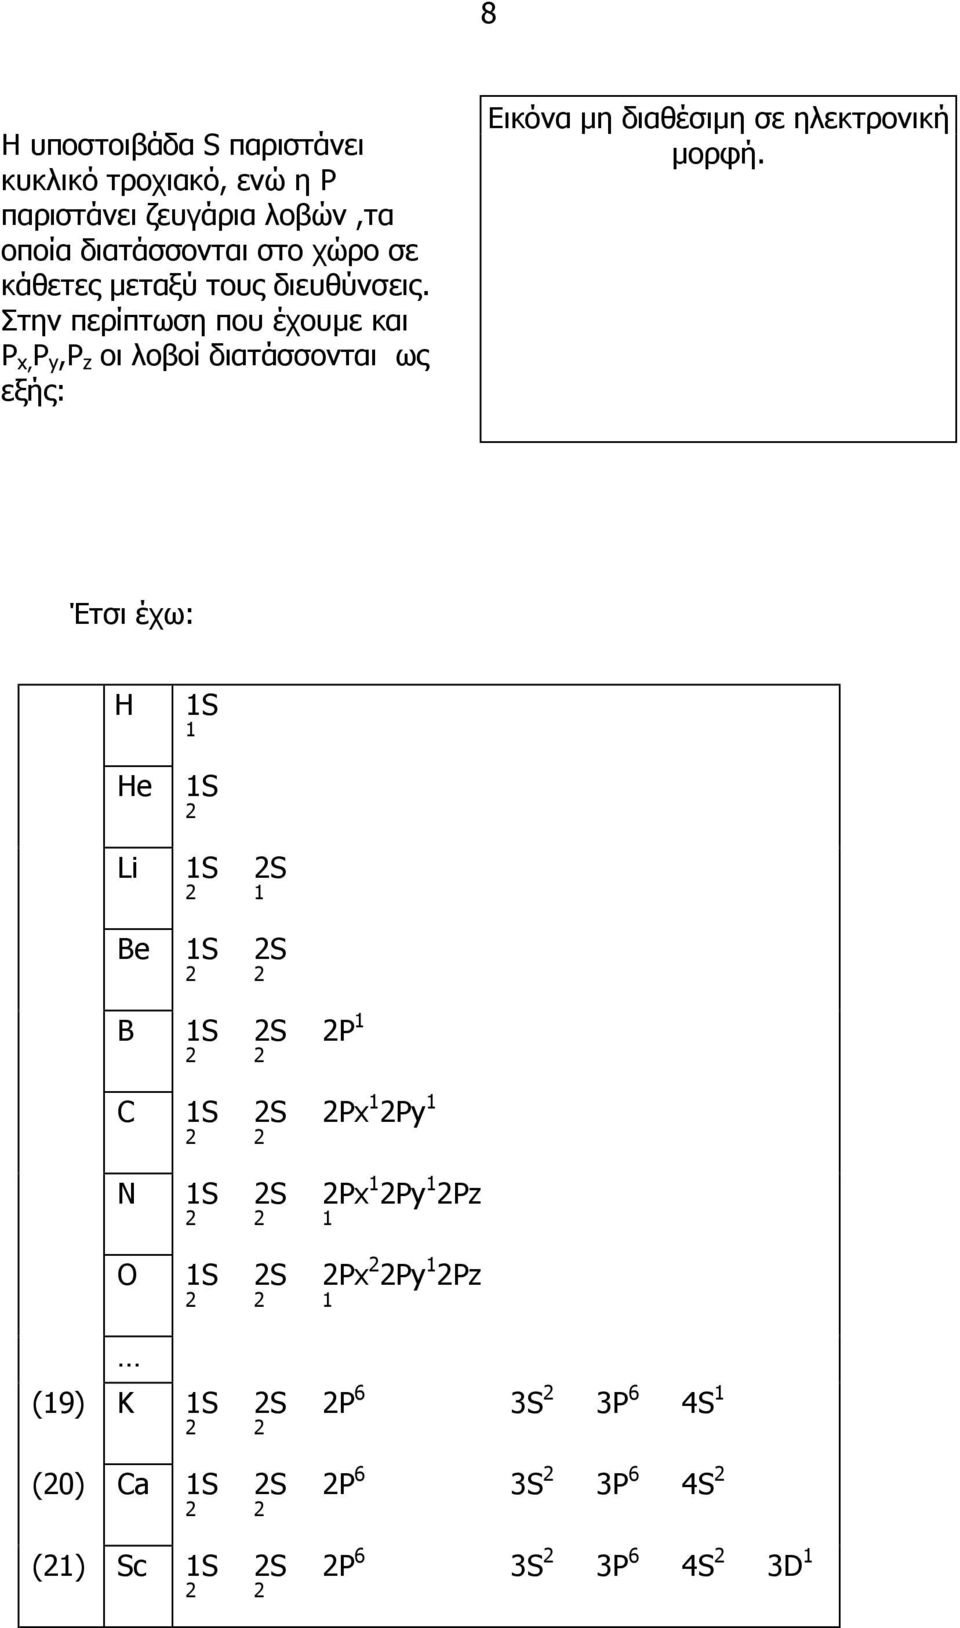 Στην περίπτωση που έχουµε και P x, P y,p z οι λοβοί διατάσσονται ως εξής: Εικόνα µη διαθέσιµη σε ηλεκτρονική µορφή.